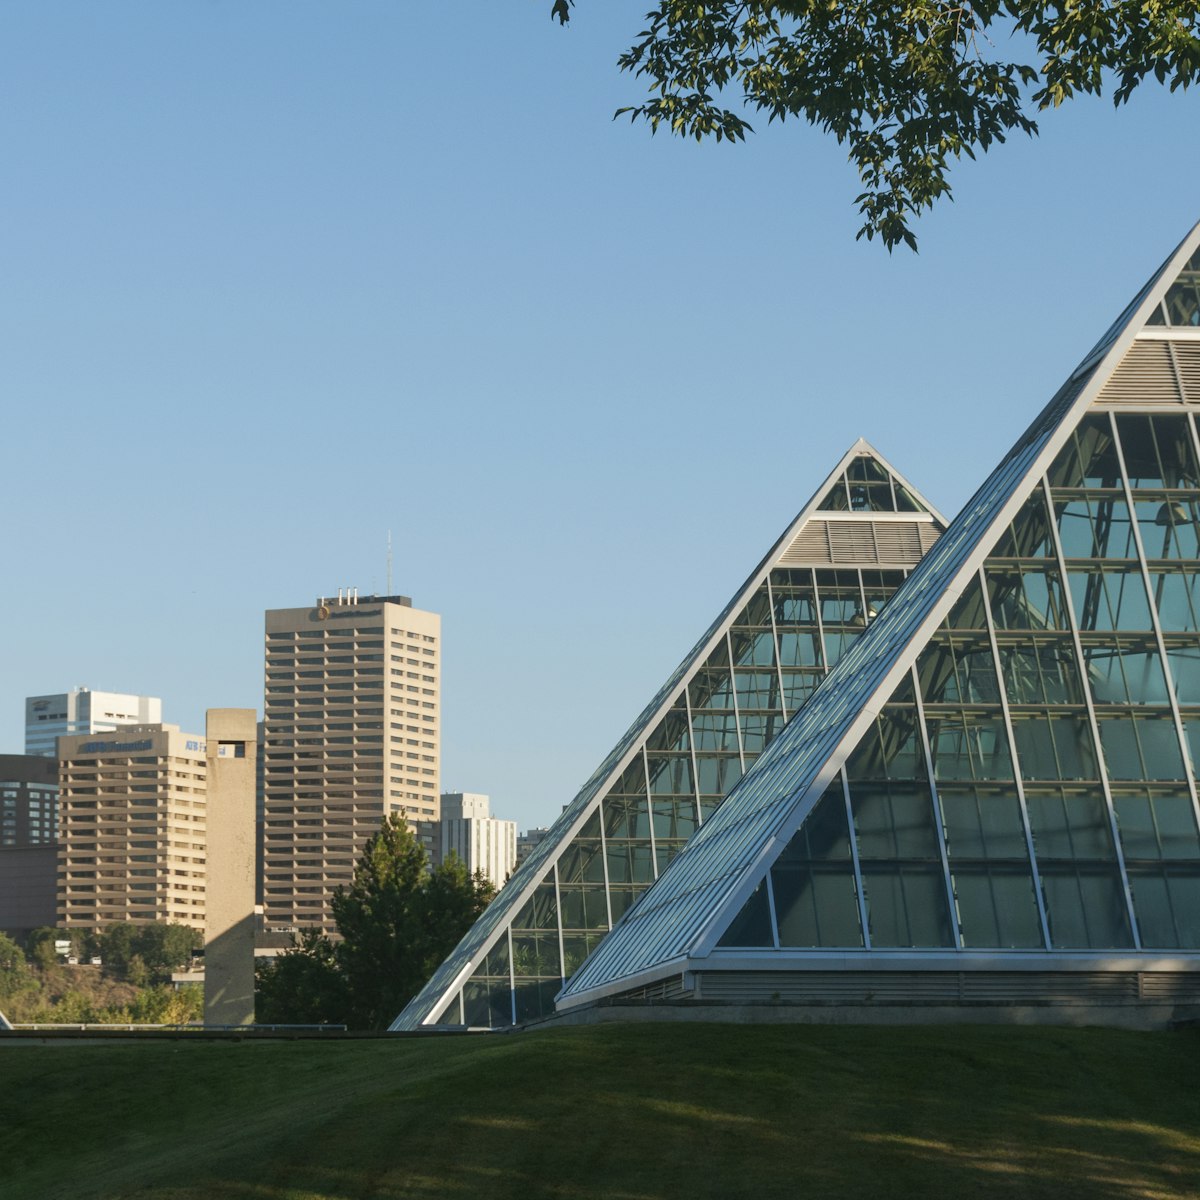 Muttart Conservatory with Edmonton skyline